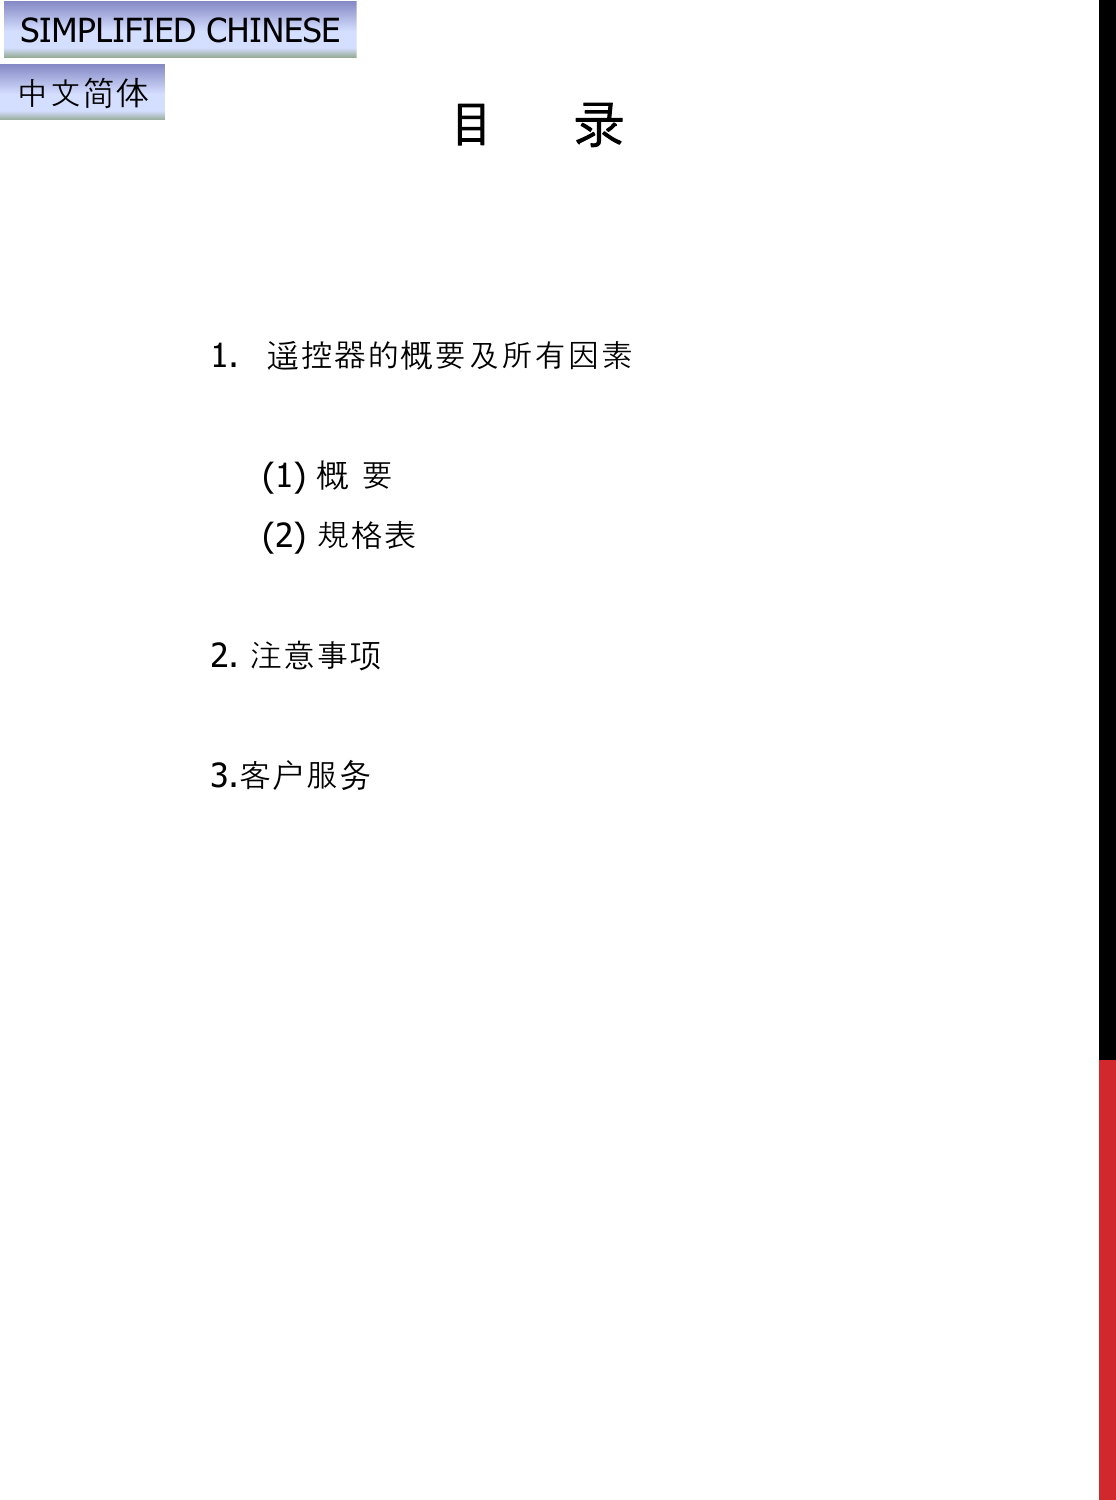 目录1. 遥控器的概要及所有因素(1) 概要(2) 規格表2. 注意事项3.客户服务SIMPLIFIED CHINESE中文简体